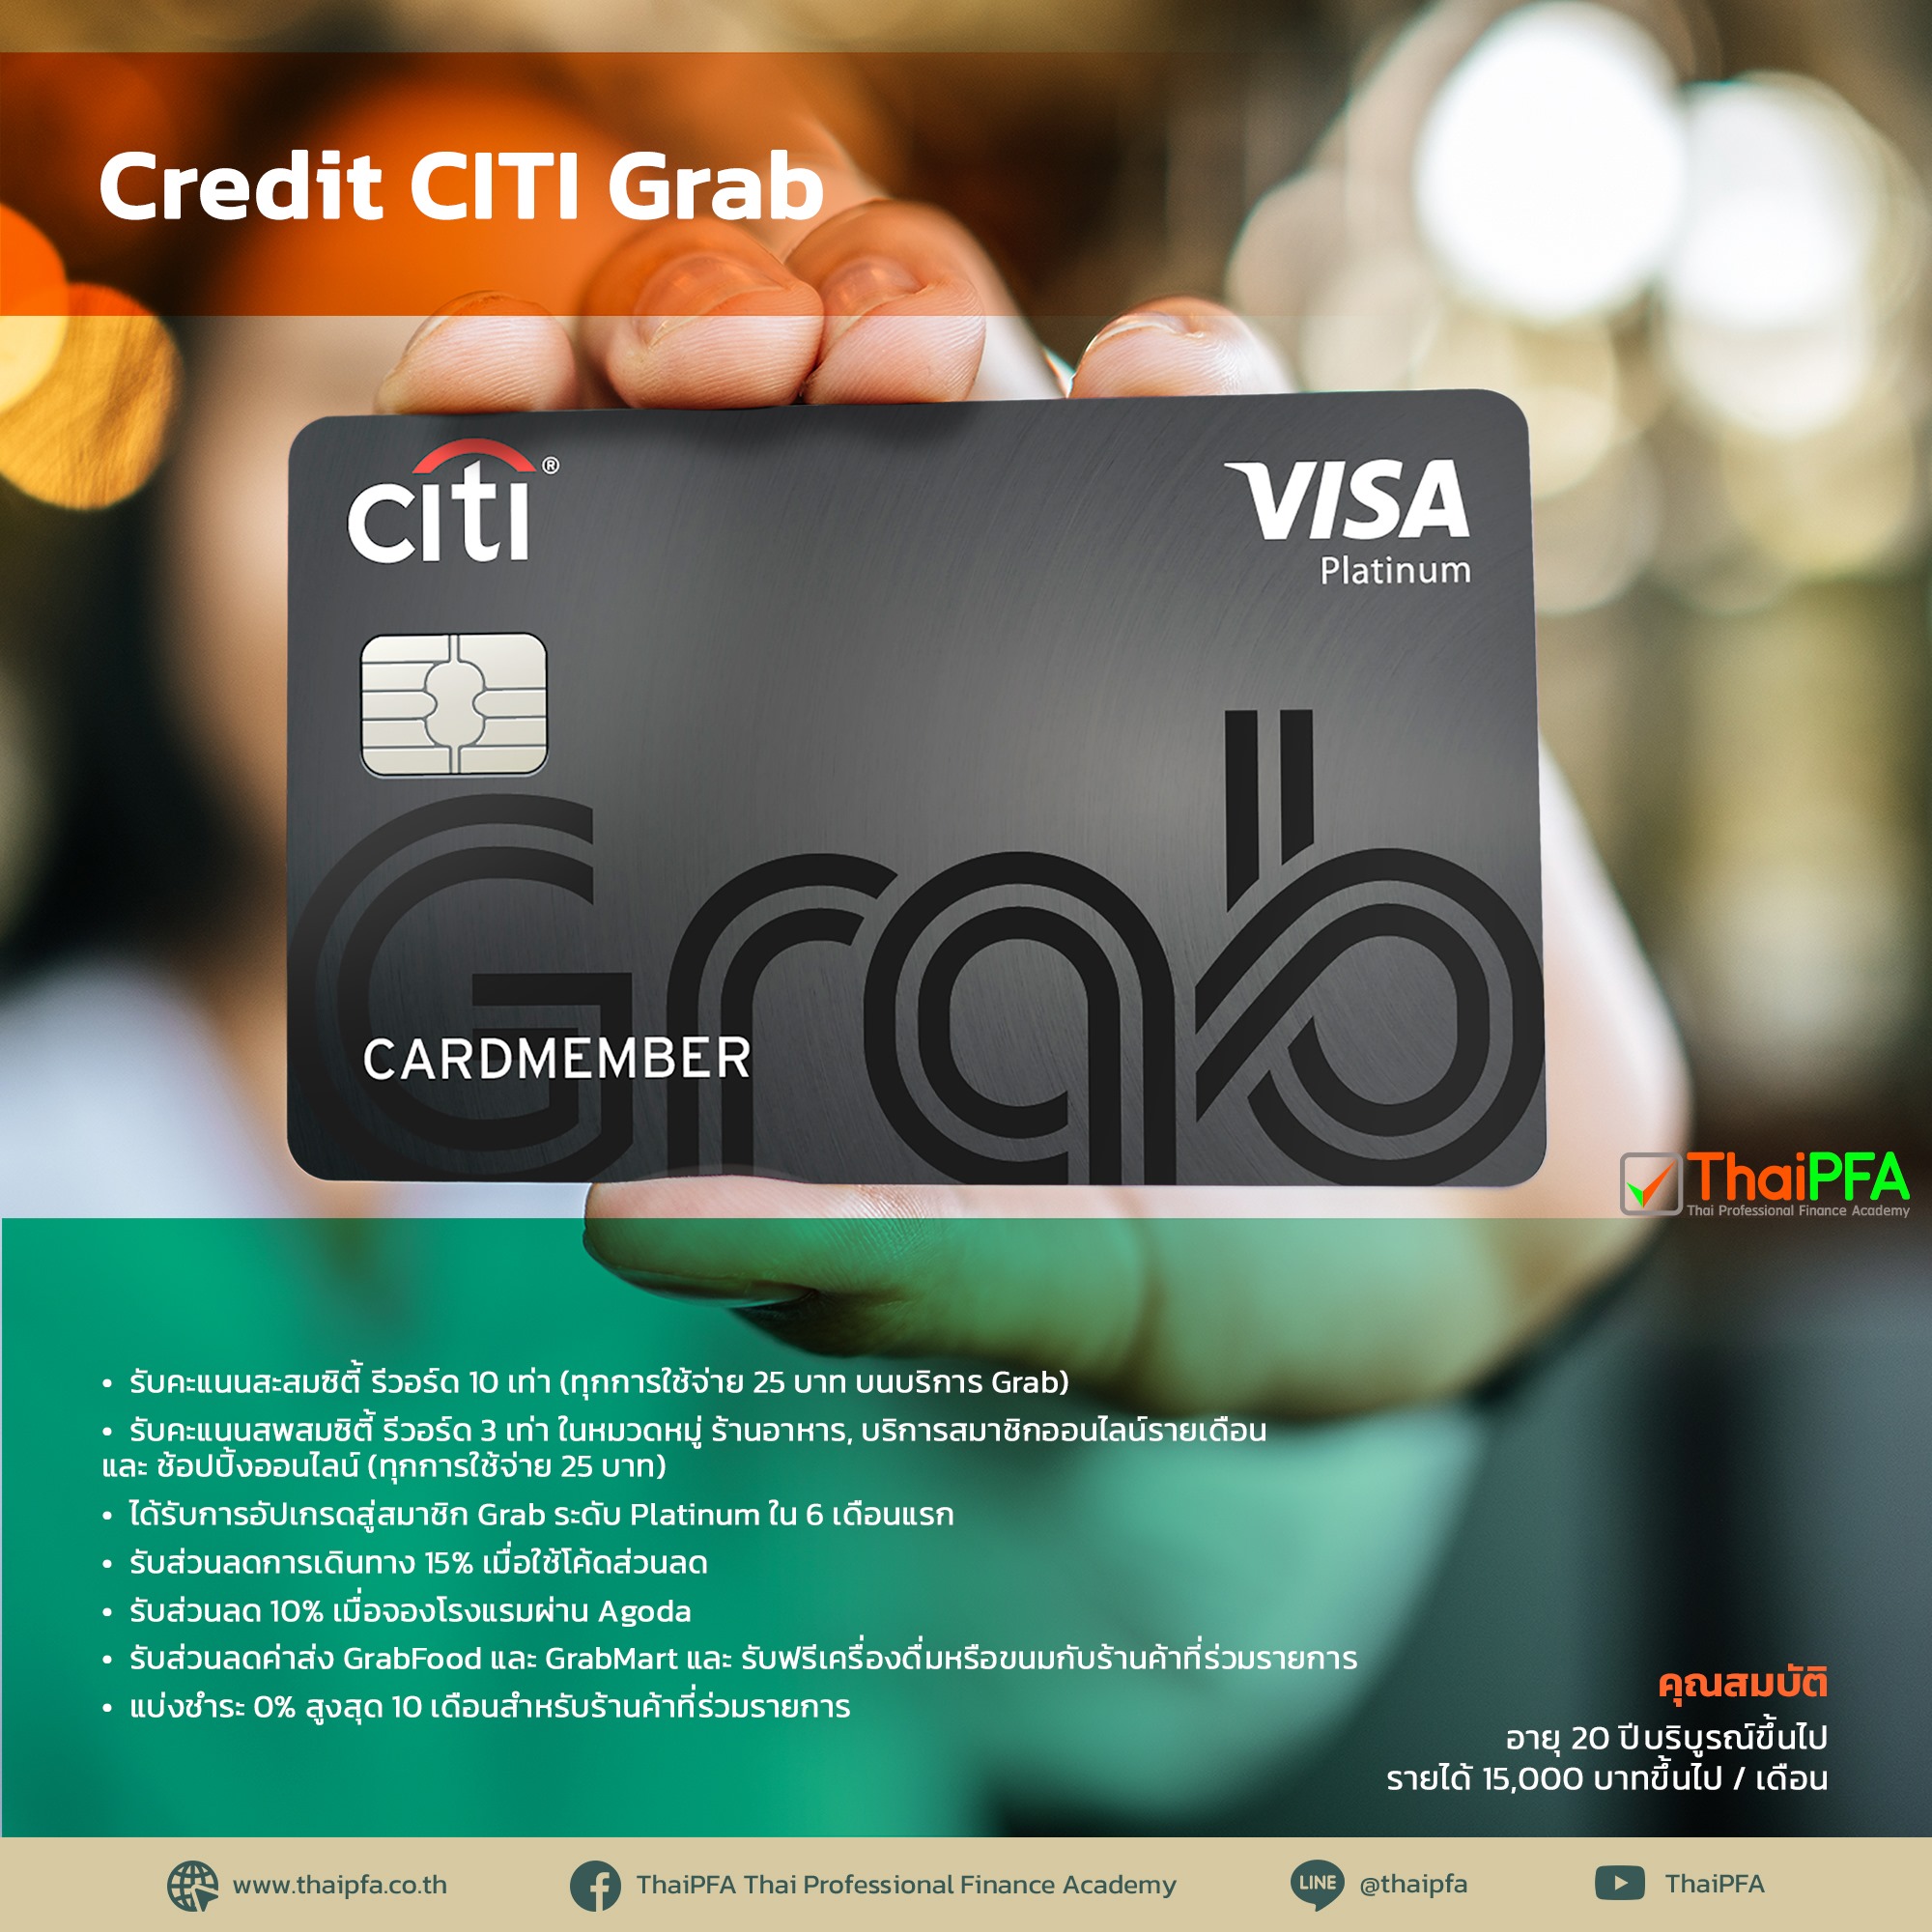 Credit CITI Grab บัตรเครดิต